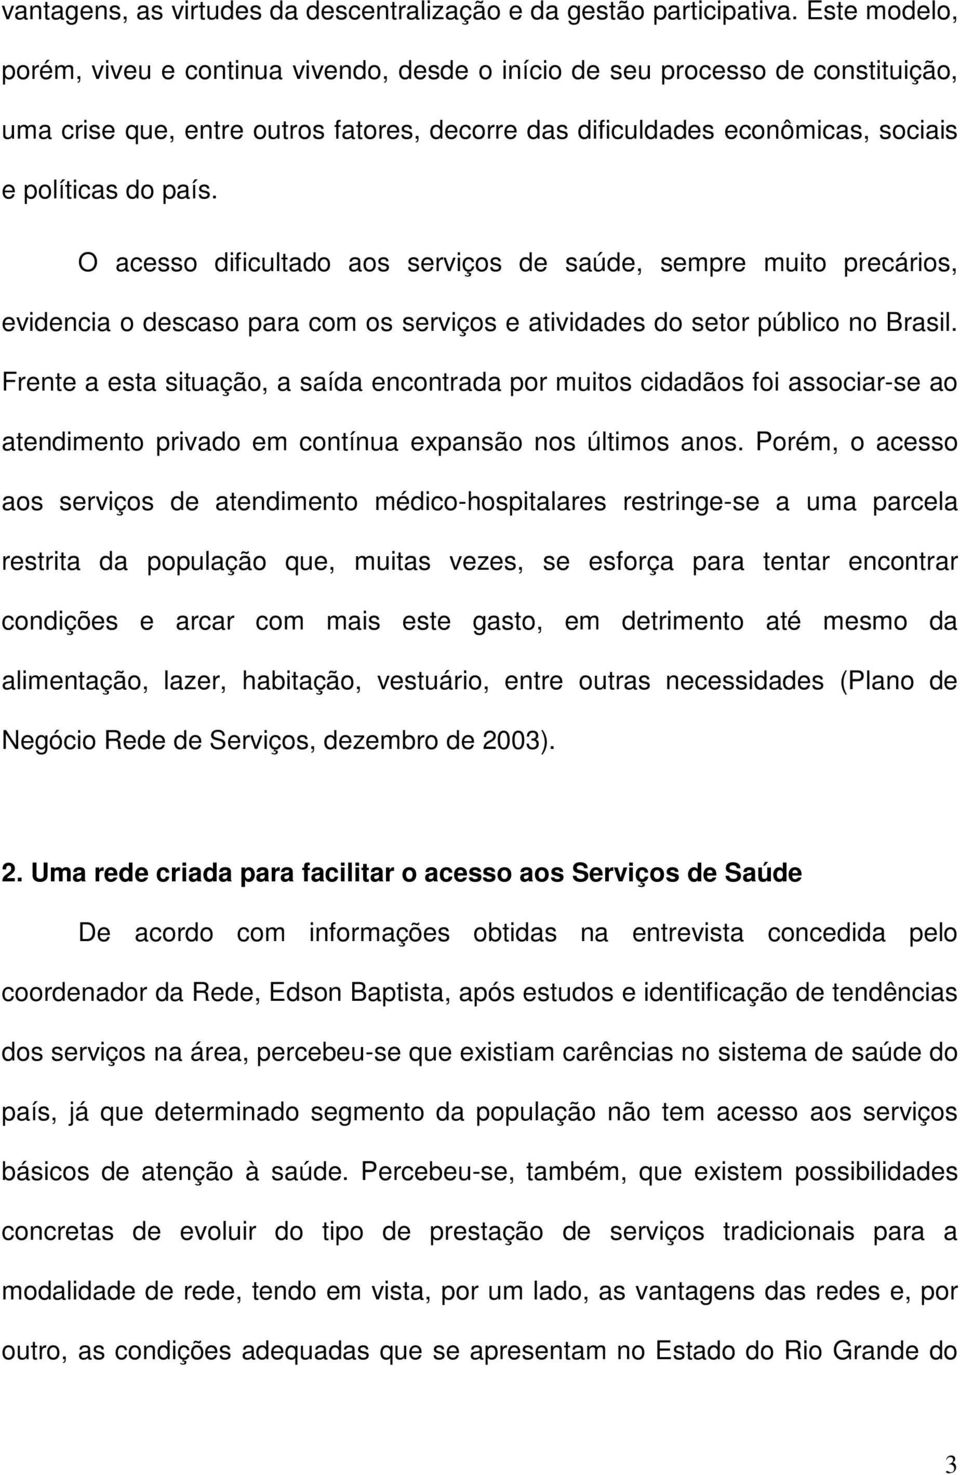 O acesso dificultado aos serviços de saúde, sempre muito precários, evidencia o descaso para com os serviços e atividades do setor público no Brasil.